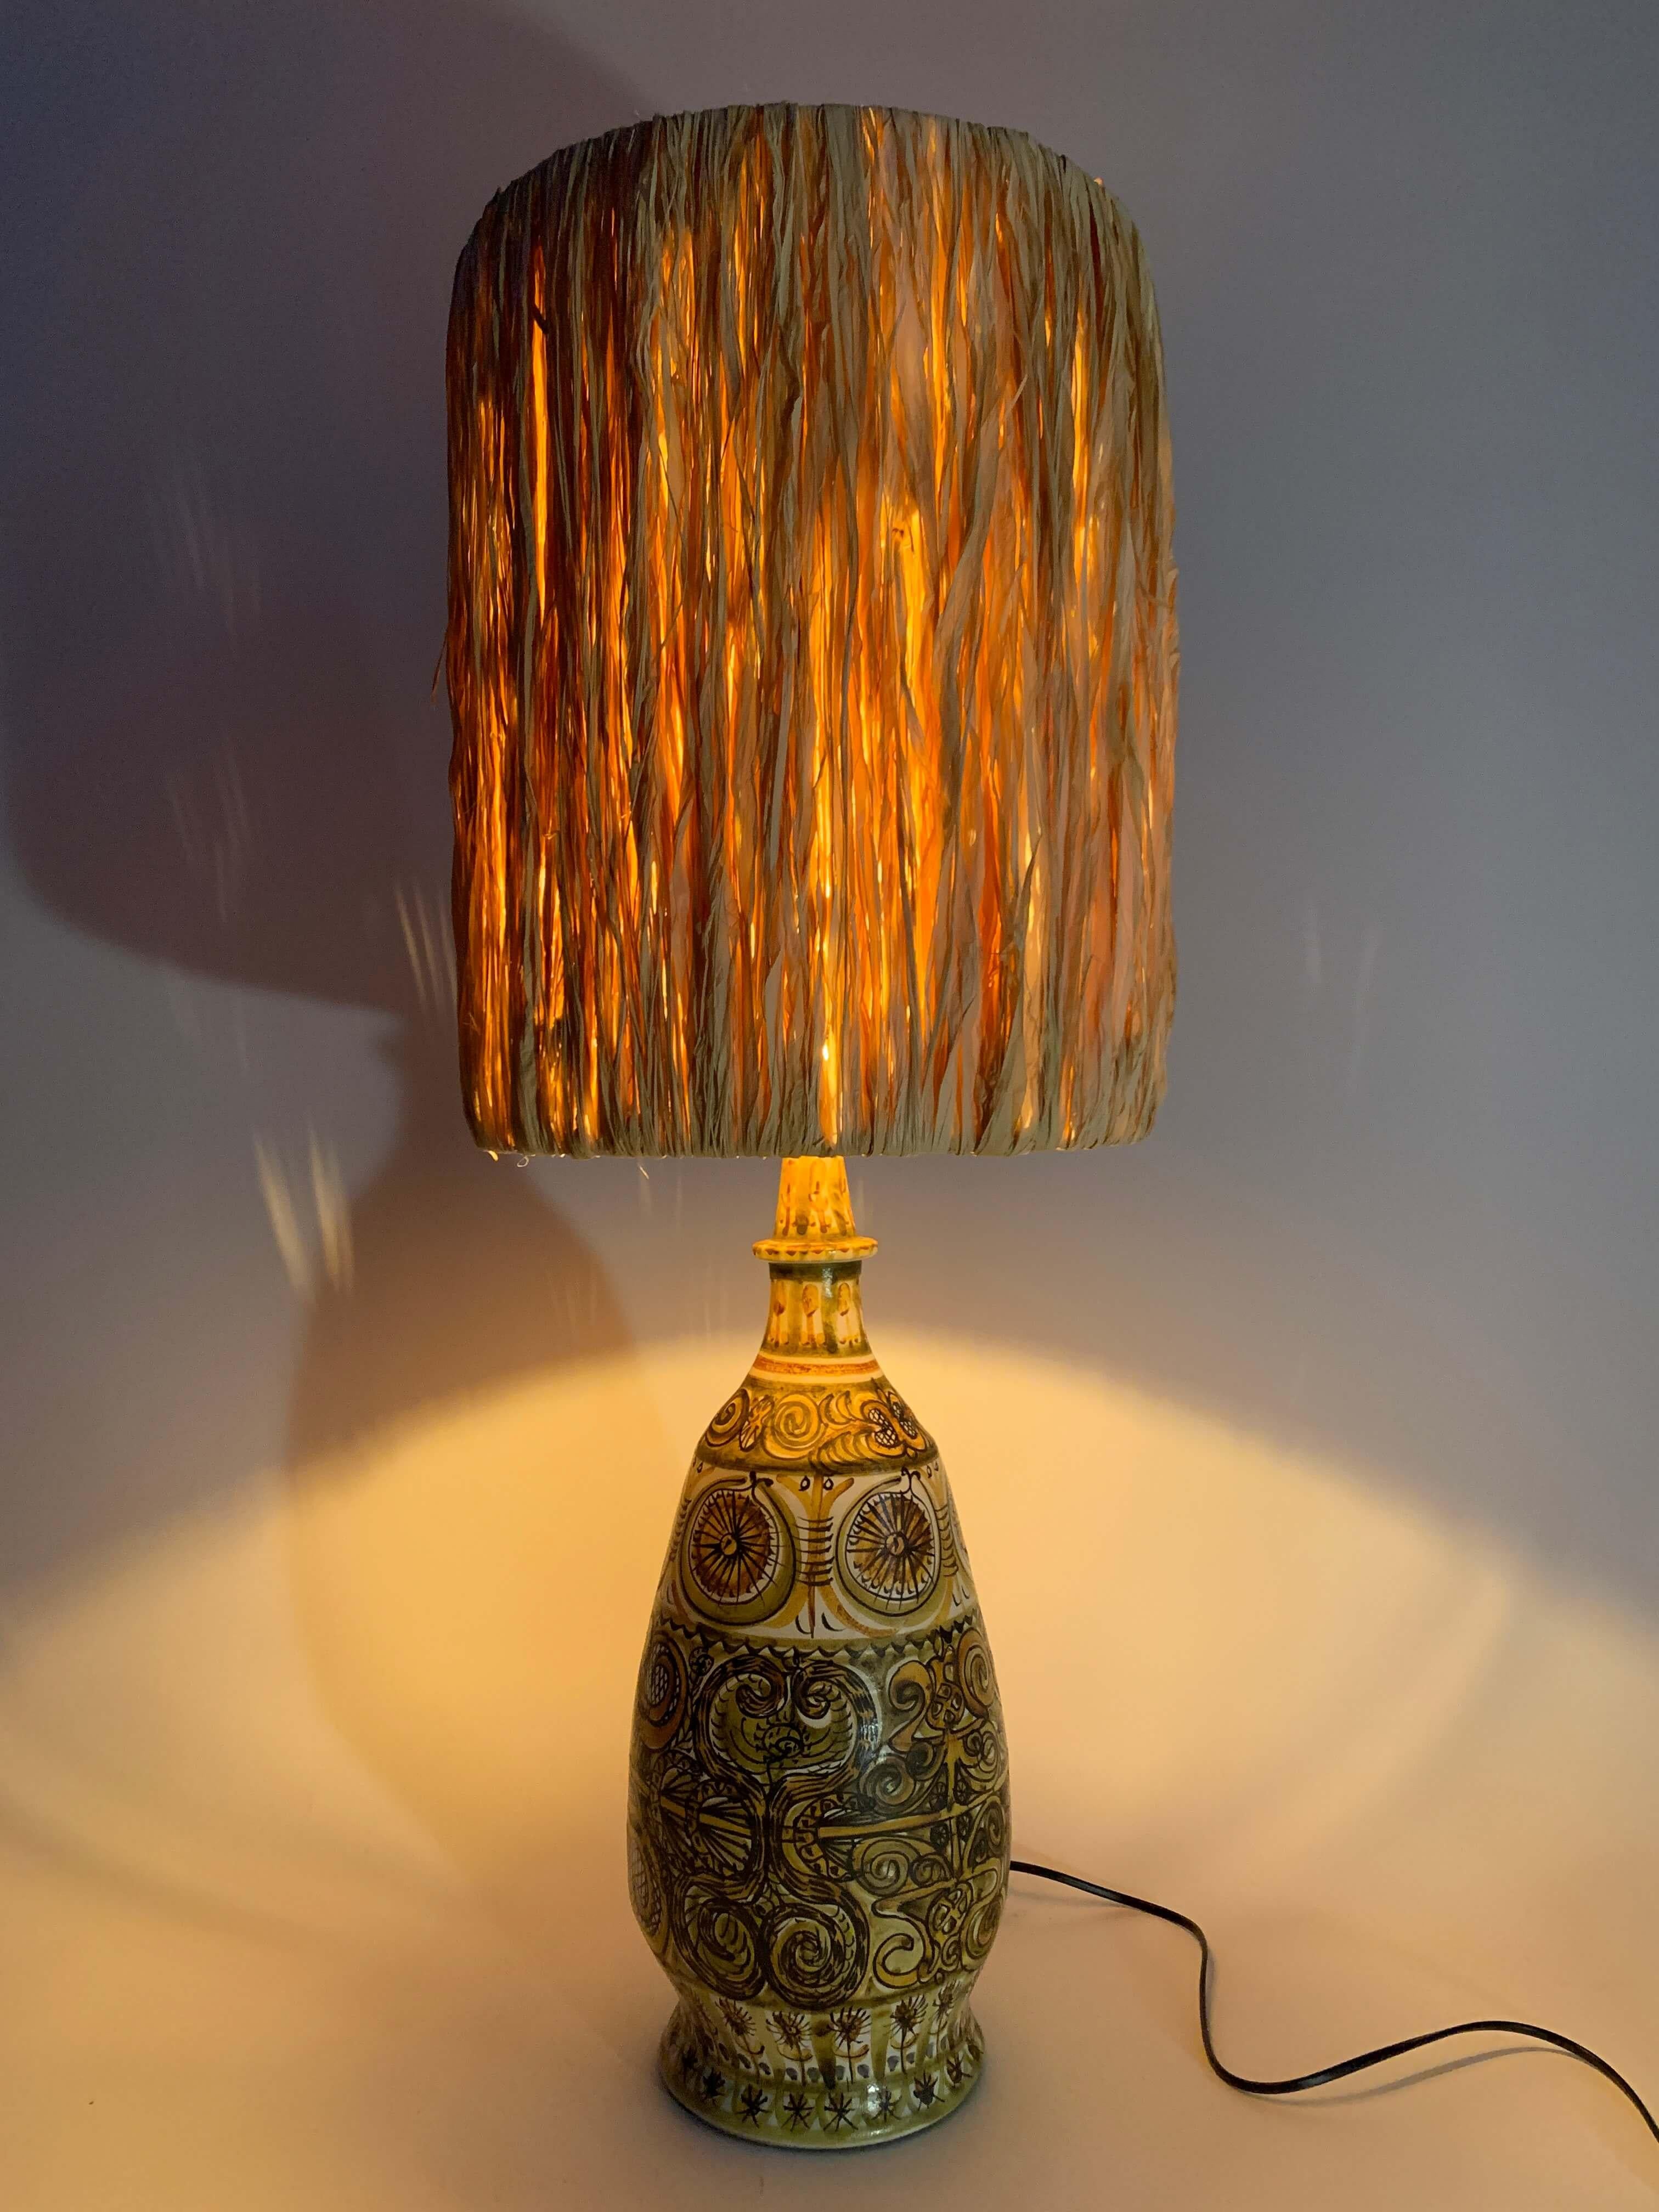 Die majestätische Lampe aus emailliertem Sandstein des Malers André HORELLOU beweist sein Können mit subtilen Paletten und einem unverwechselbaren Dekor, das ihm ganz eigen ist.
Einzigartiges Stück und eine der größten existierenden Tischlampen des